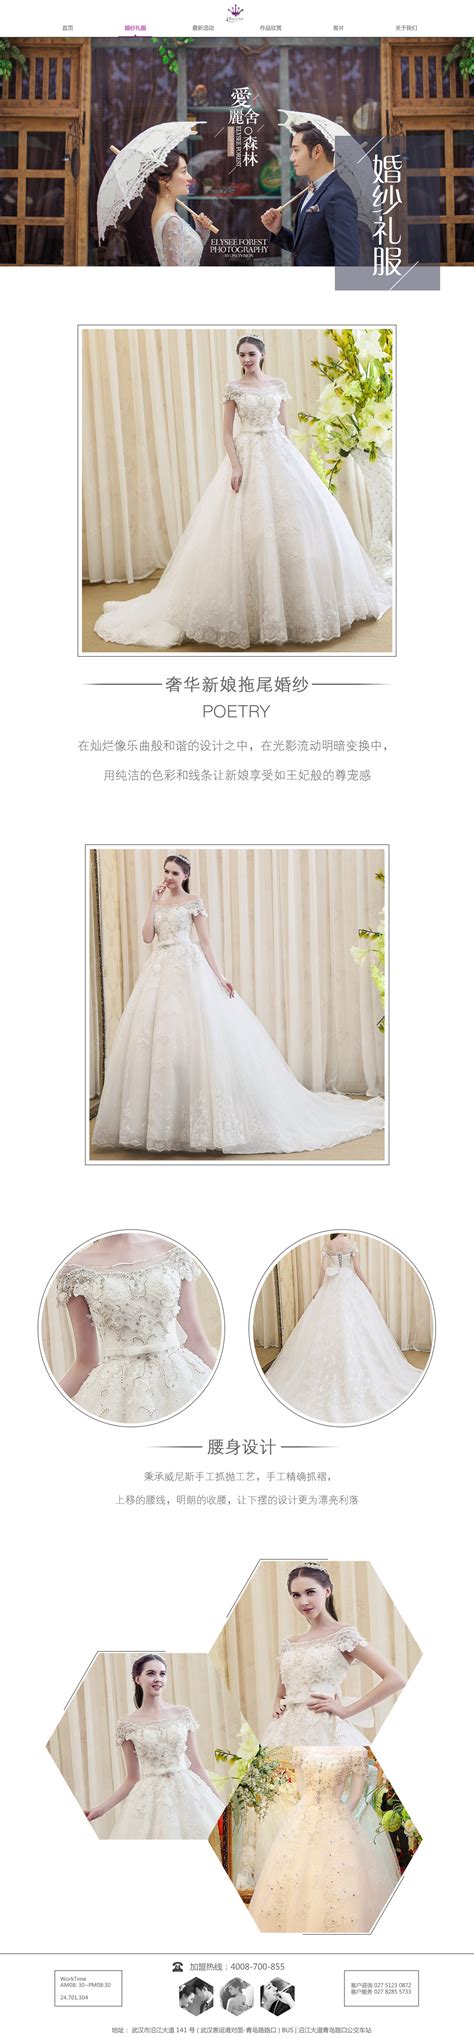 婚纱摄影网站的设计与实现模板